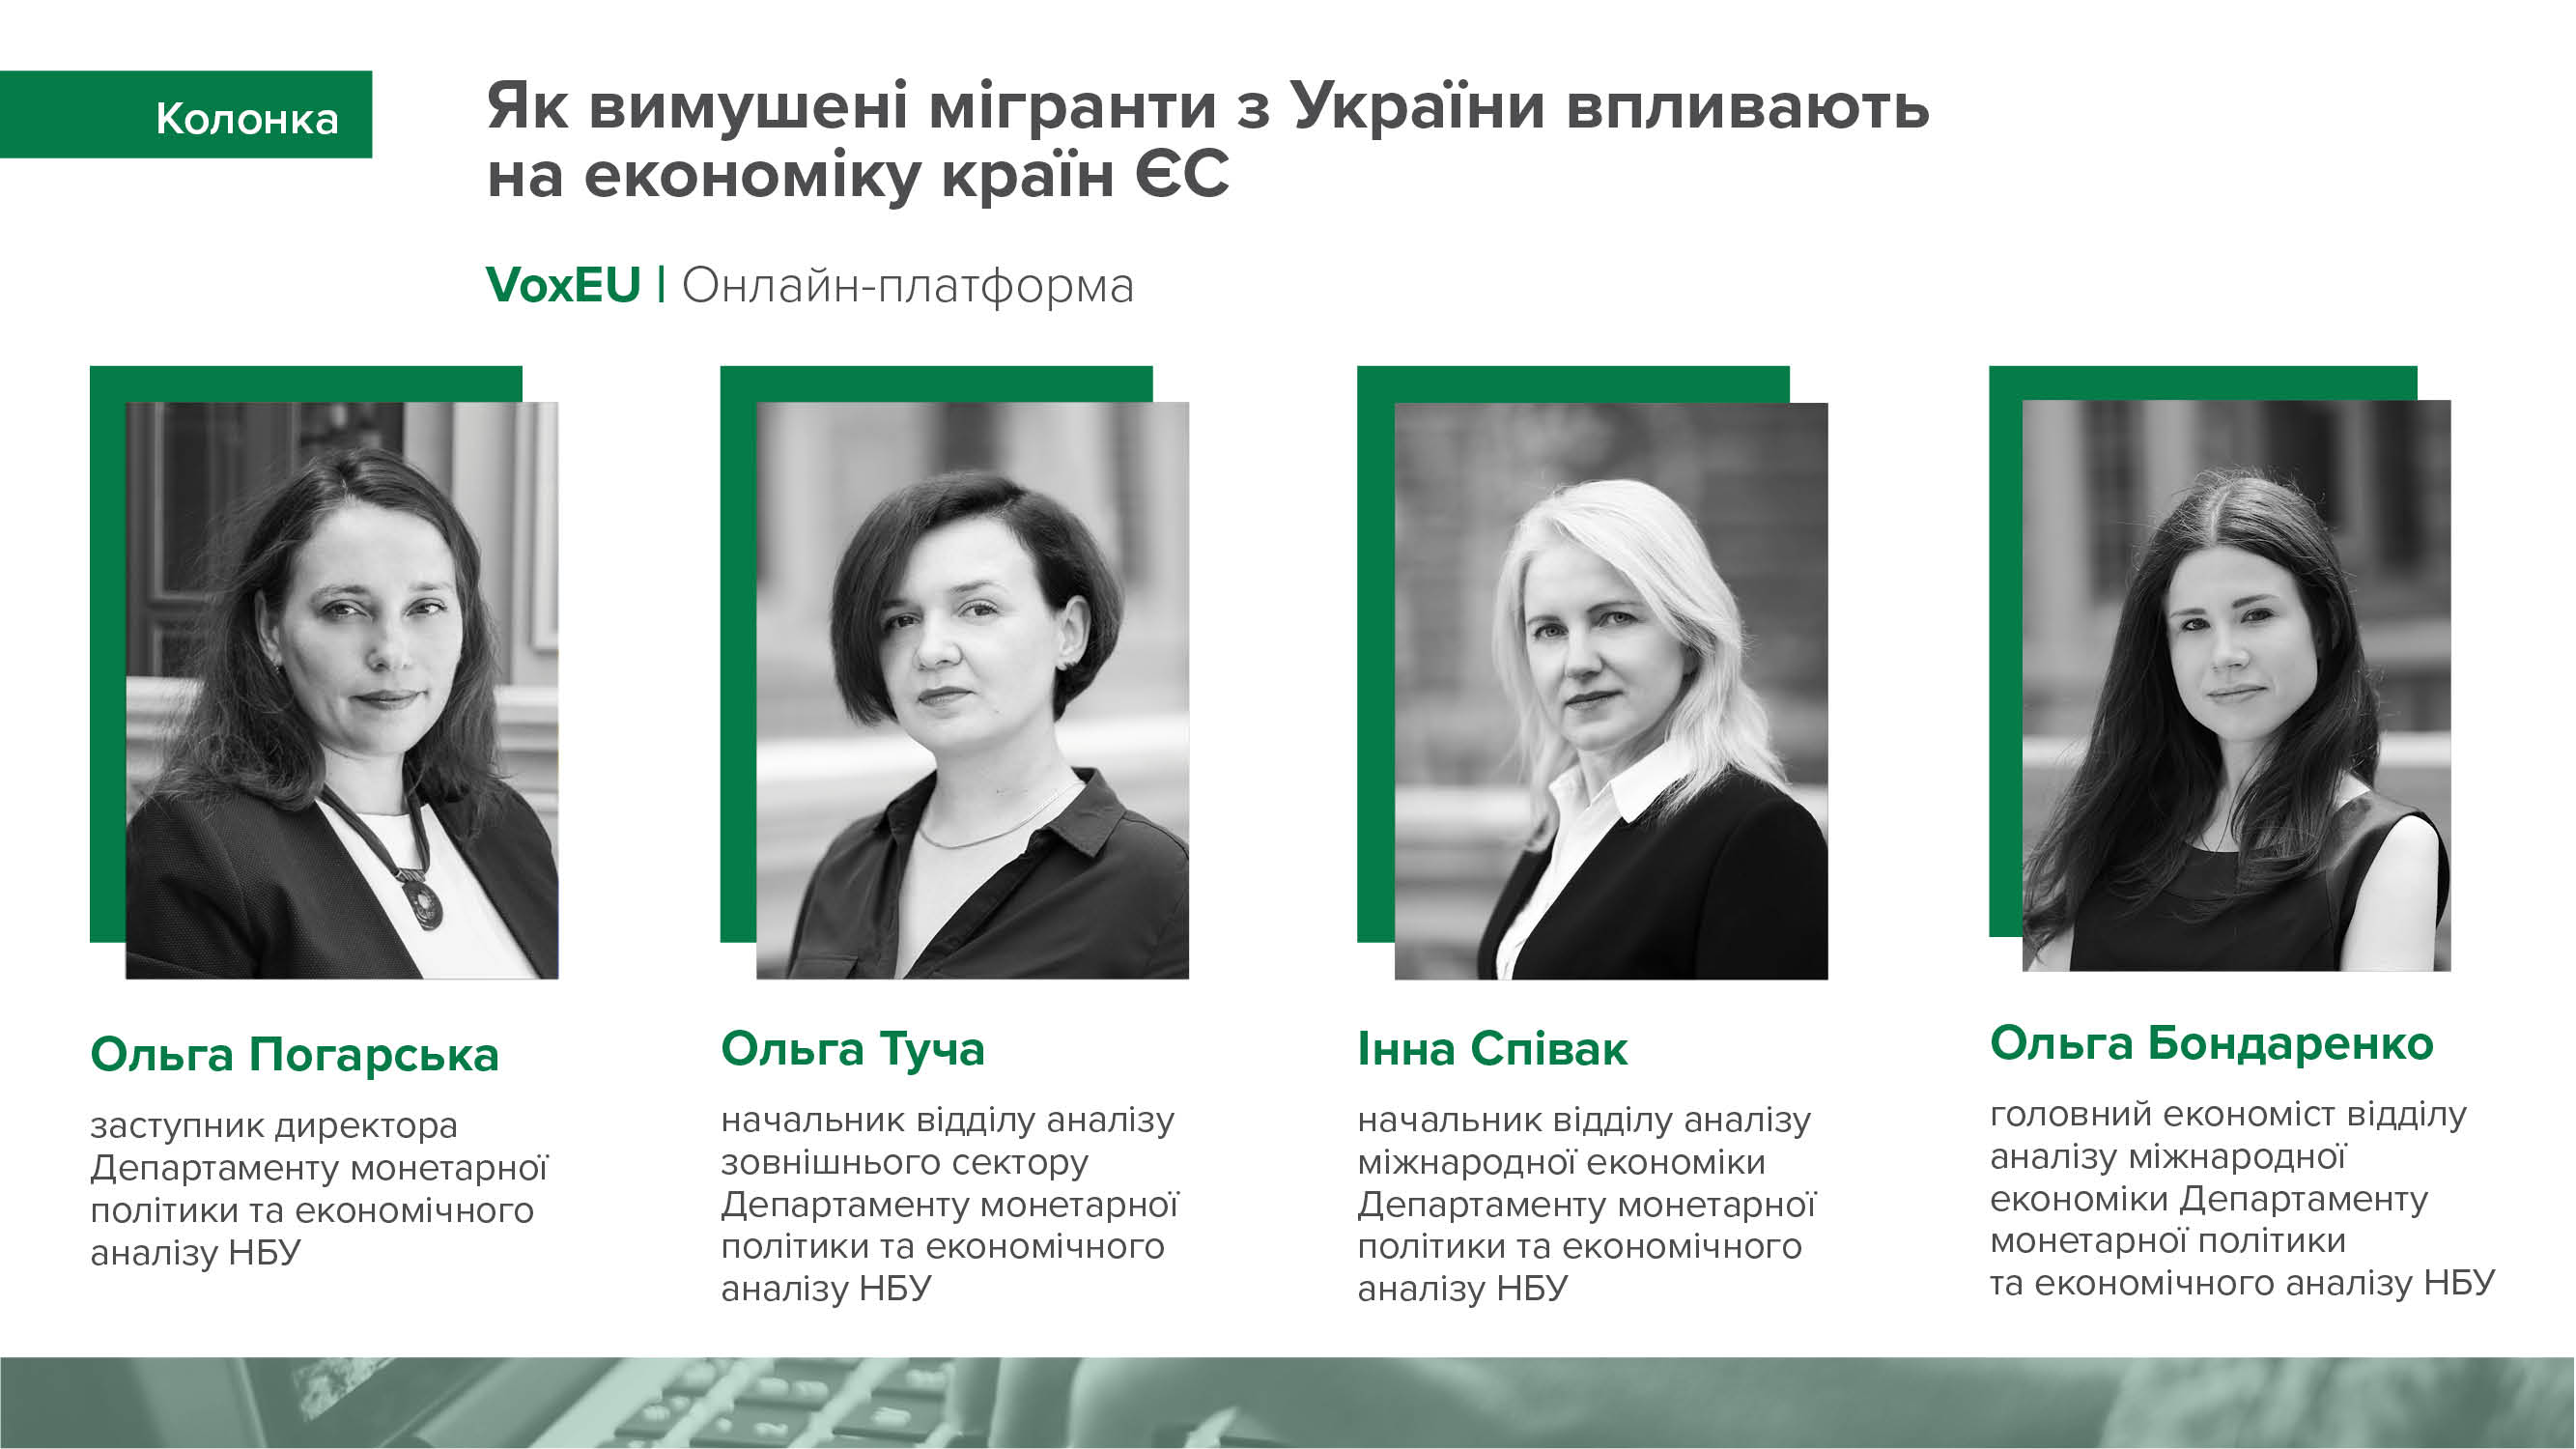 Колонка фахівців Департаменту монетарної політики та економічного аналізу НБУ на онлайн-платформі VoxEU про вплив вимушеної міграції з України на економіку європейських країн